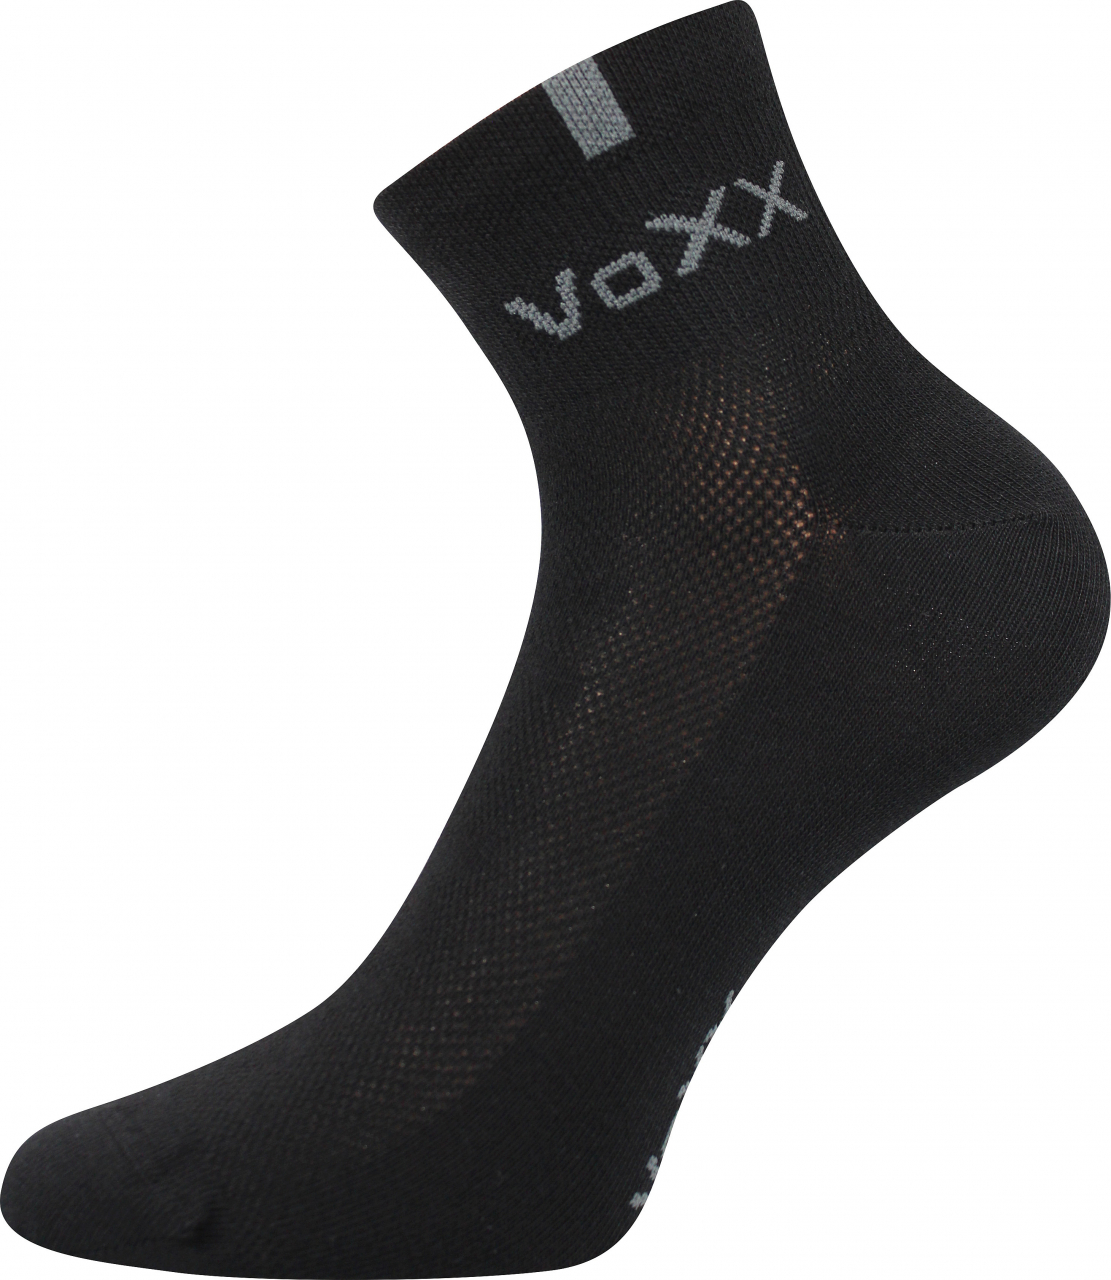 Ponožky s elastanem Voxx Fredy - černé